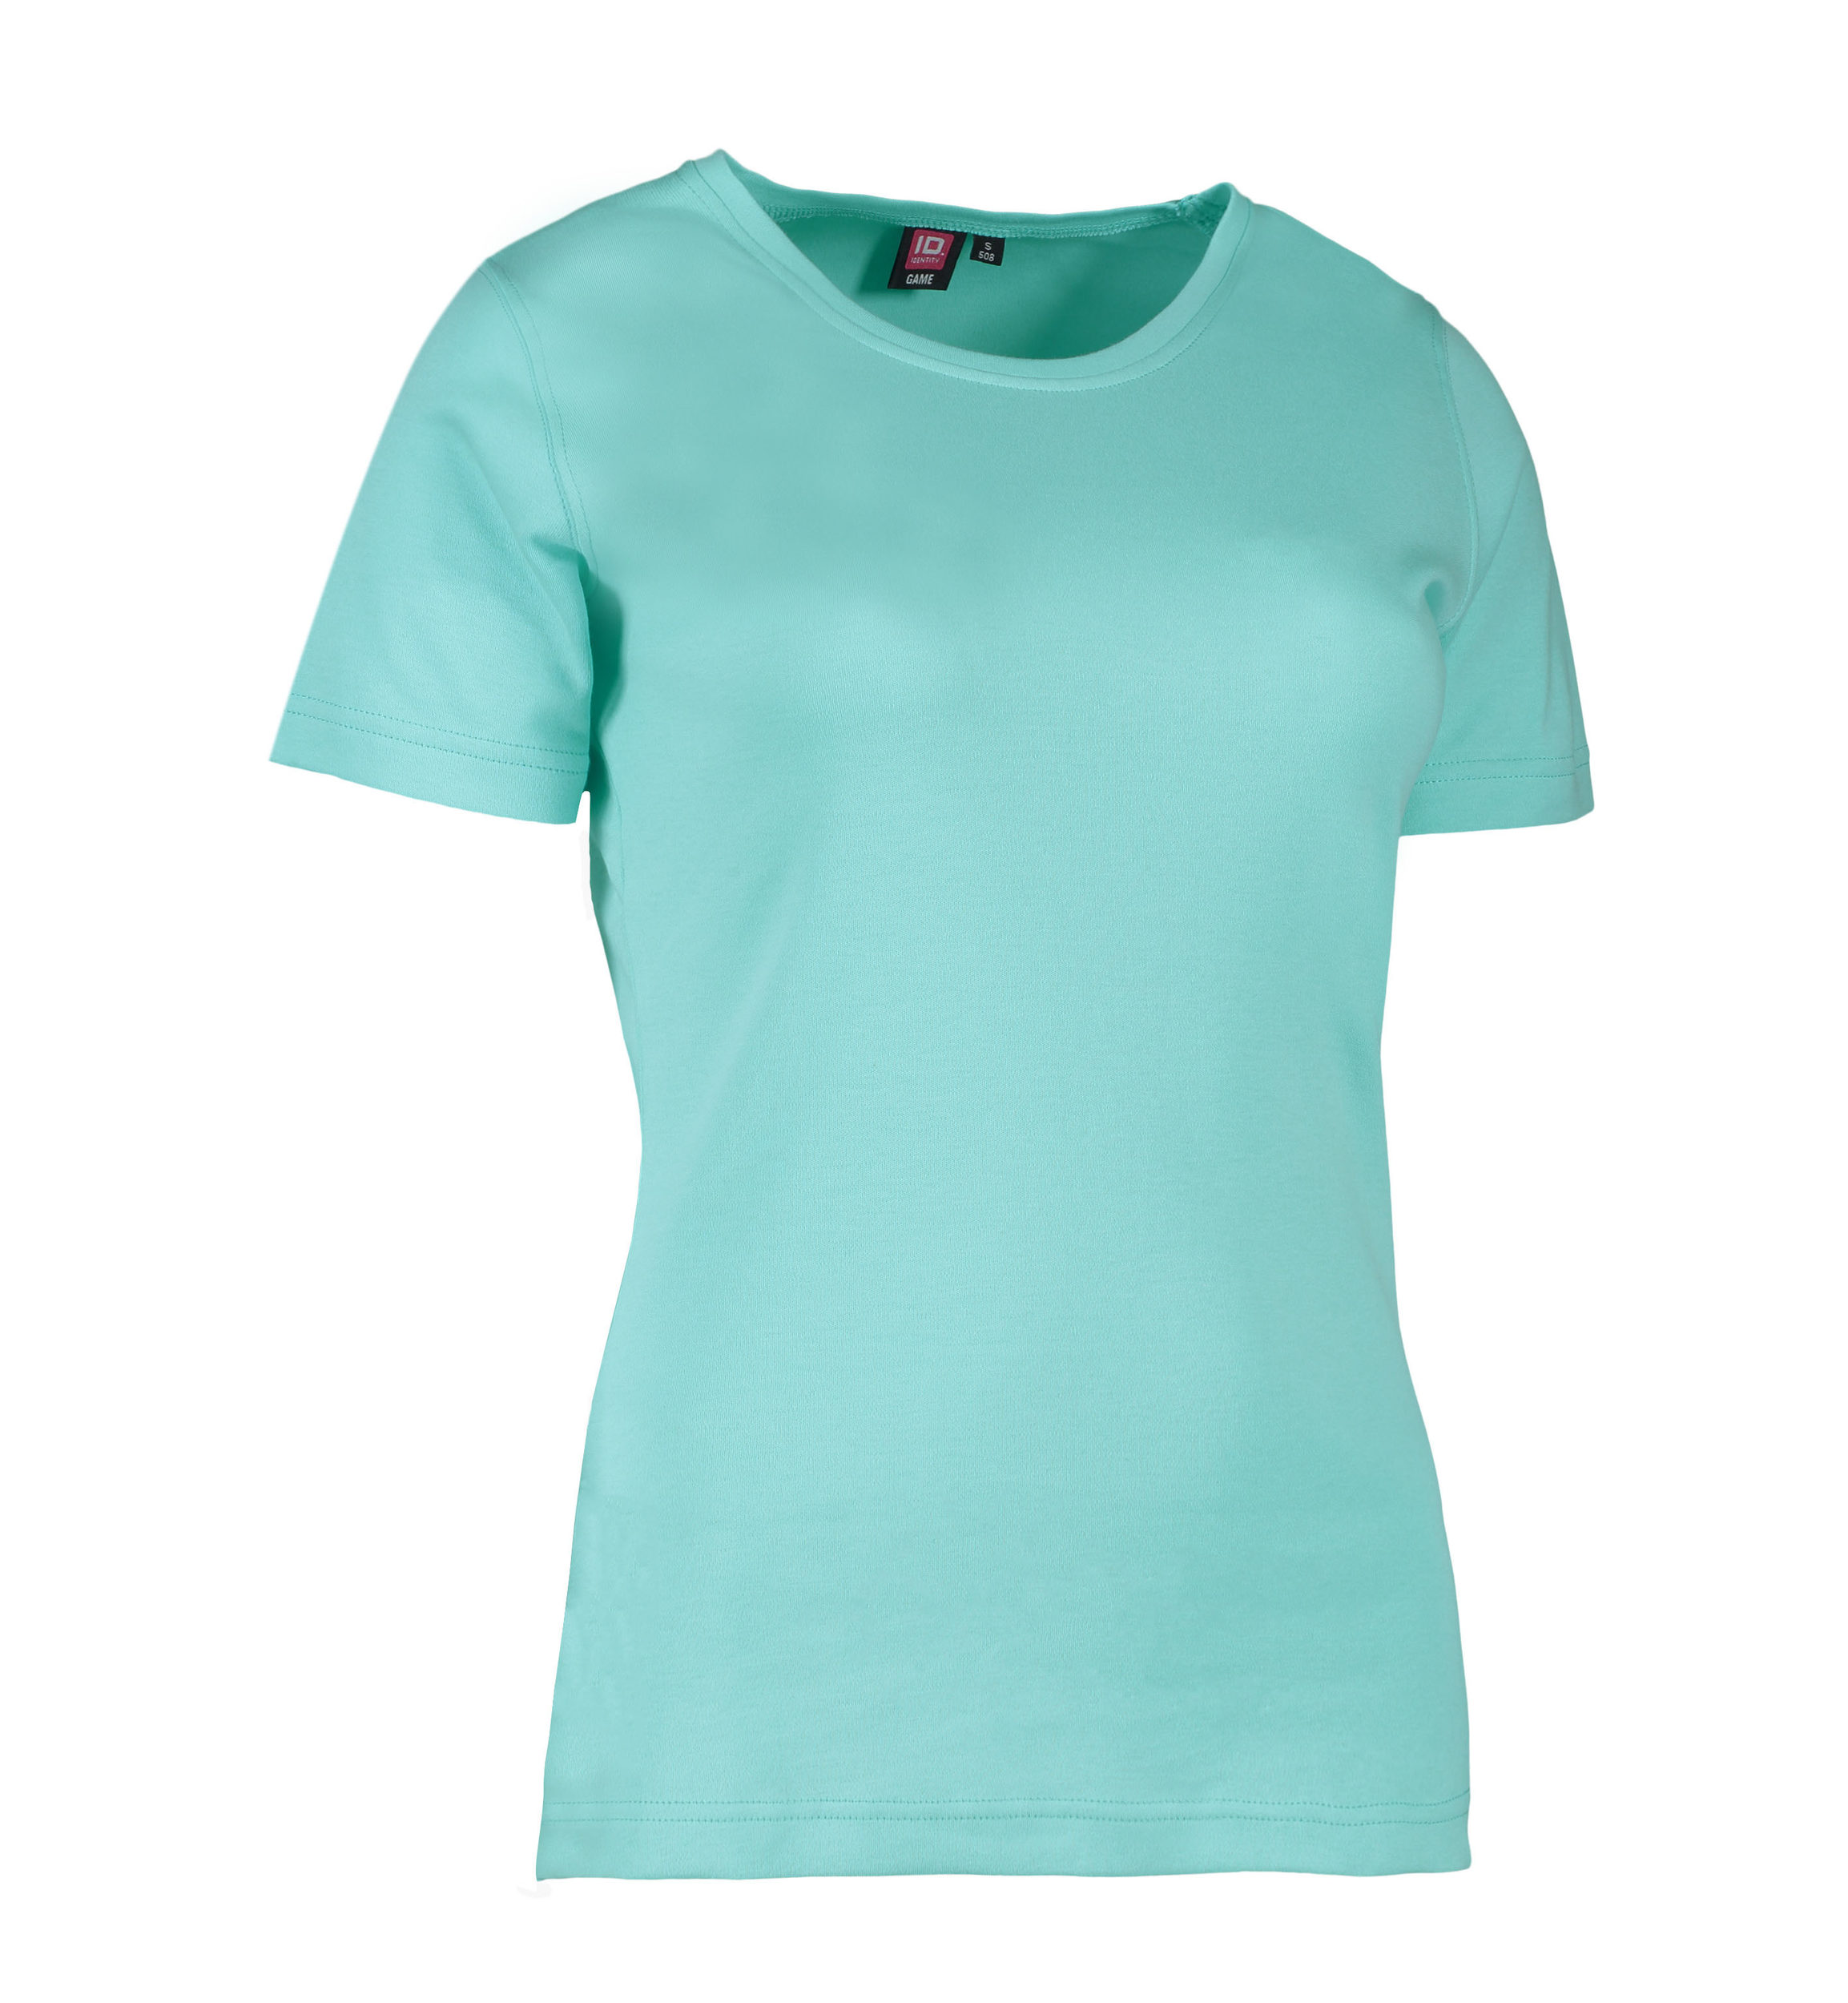 Billede af Mint farvet dame t-shirt med rund hals - XL hos Sygeplejebutikken.dk